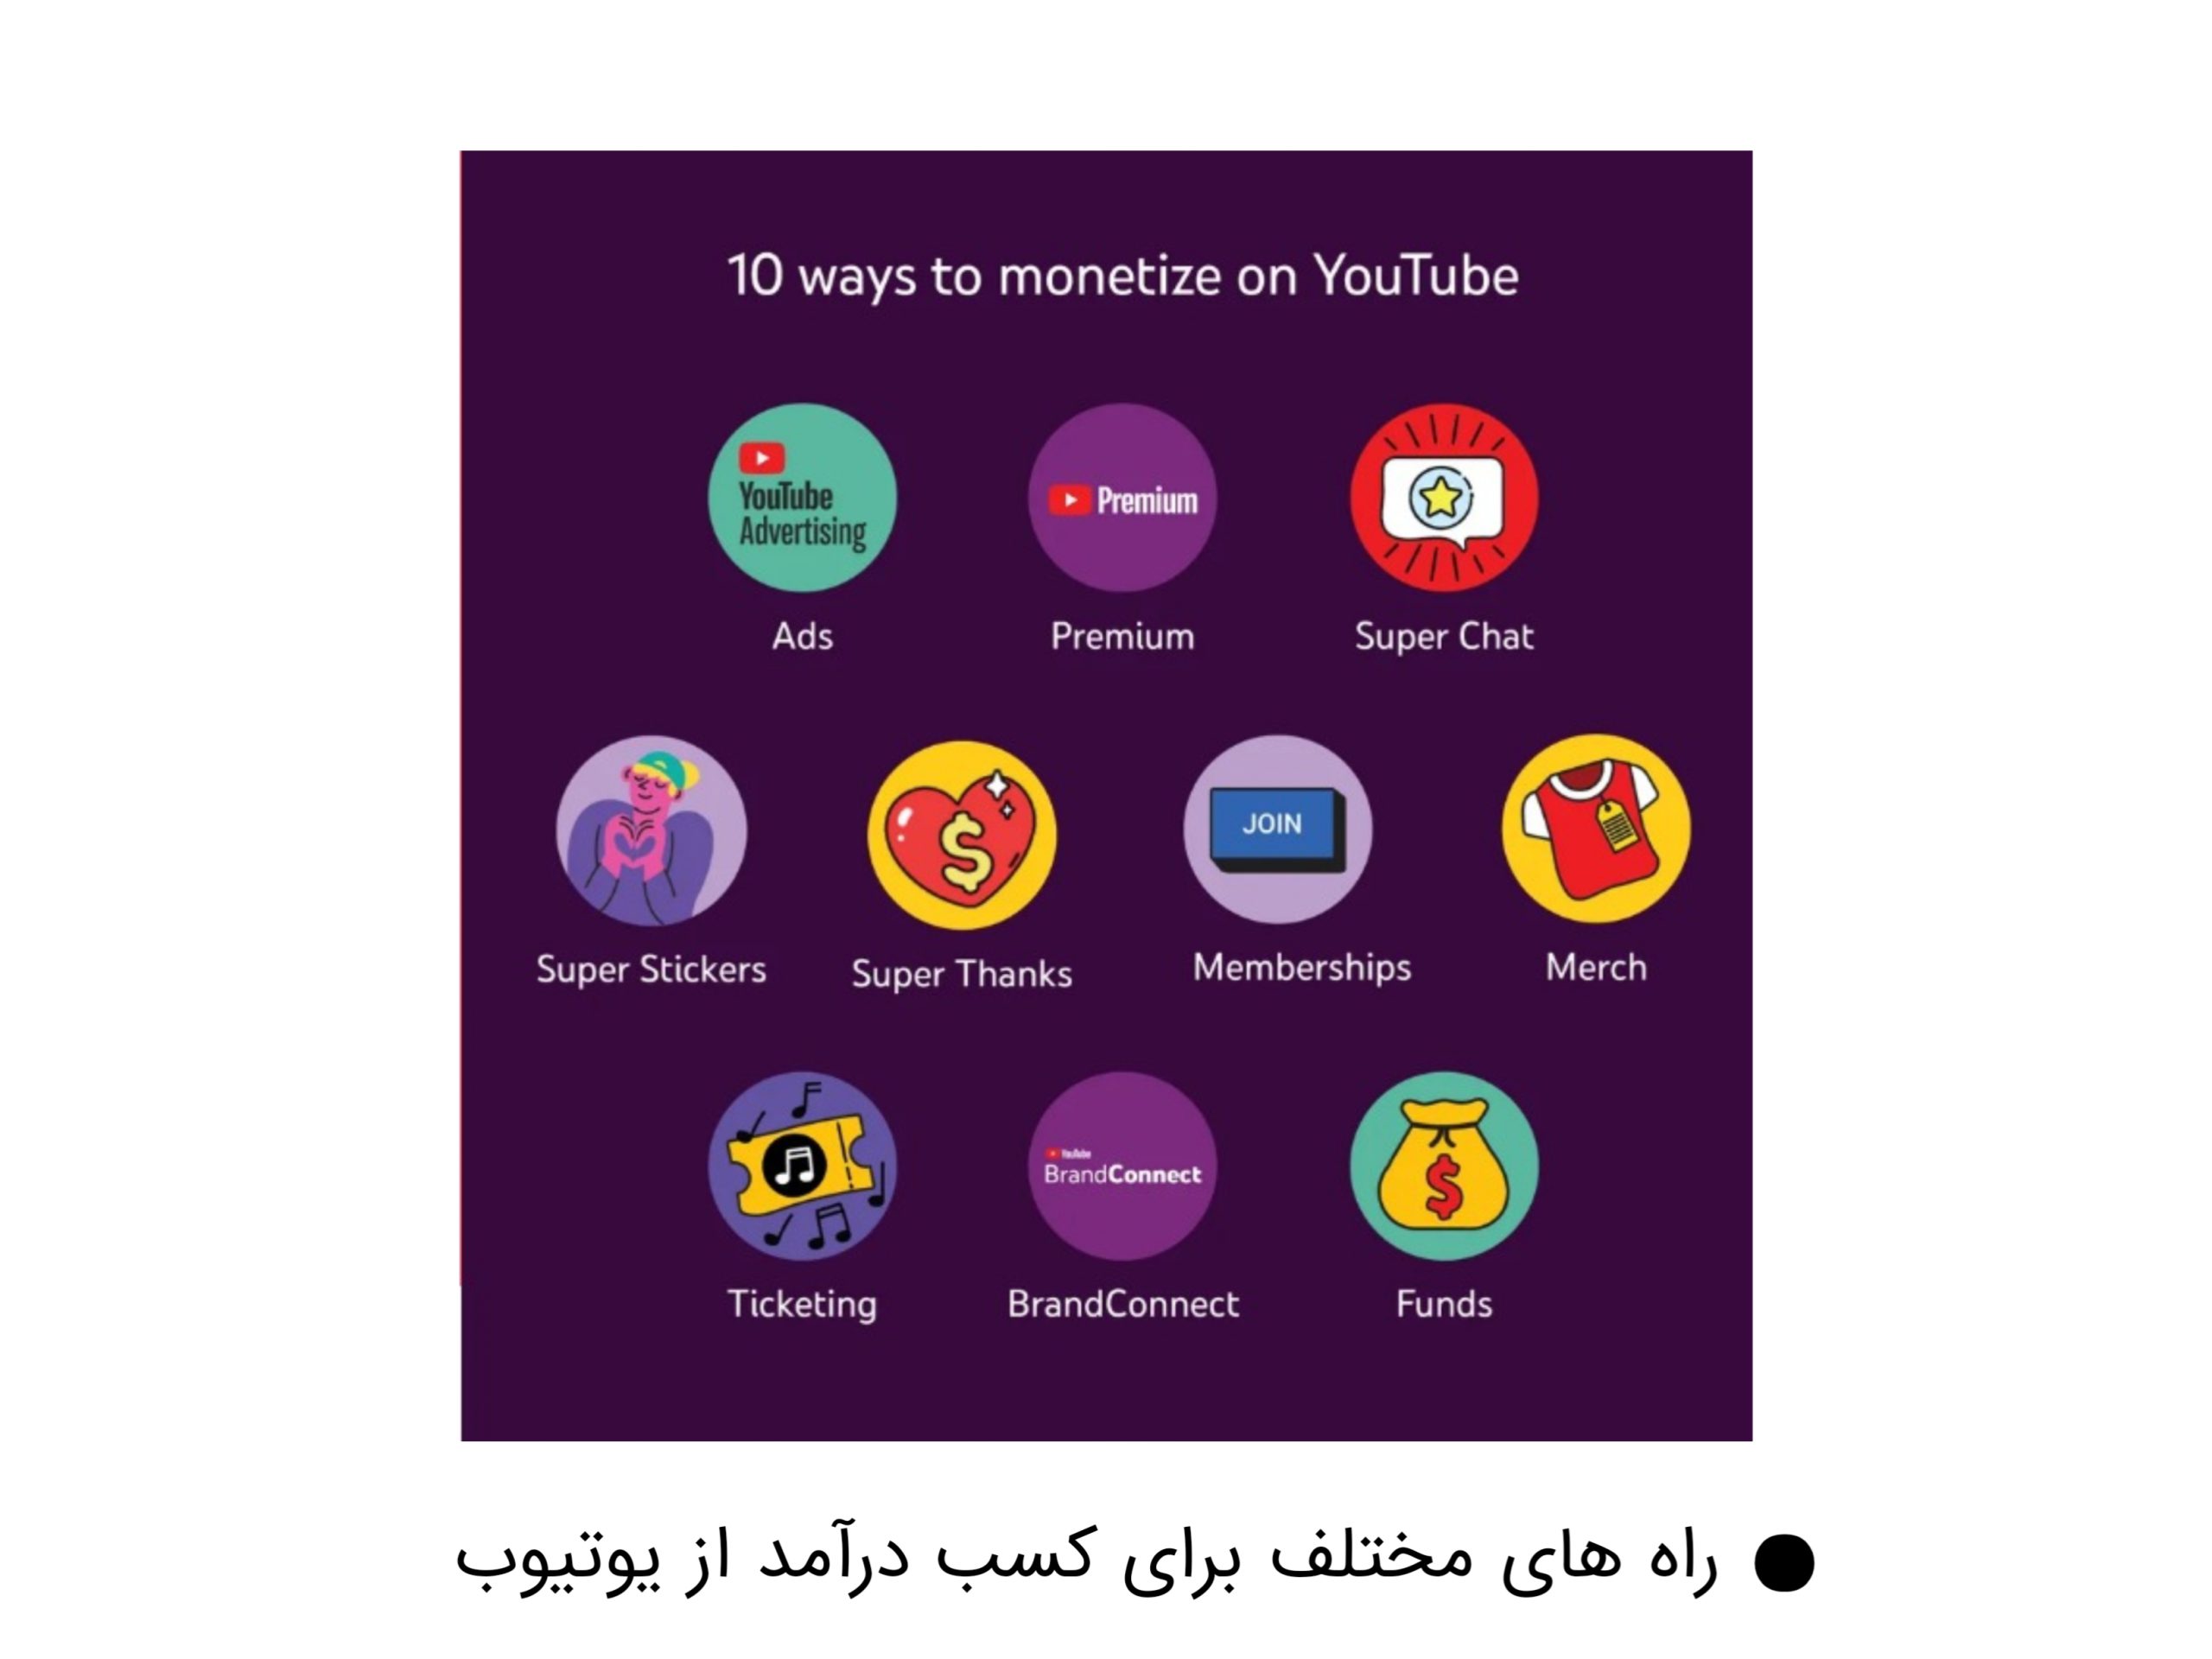 راه های مختلف فعال سازی کسب درآمد از یوتیوب